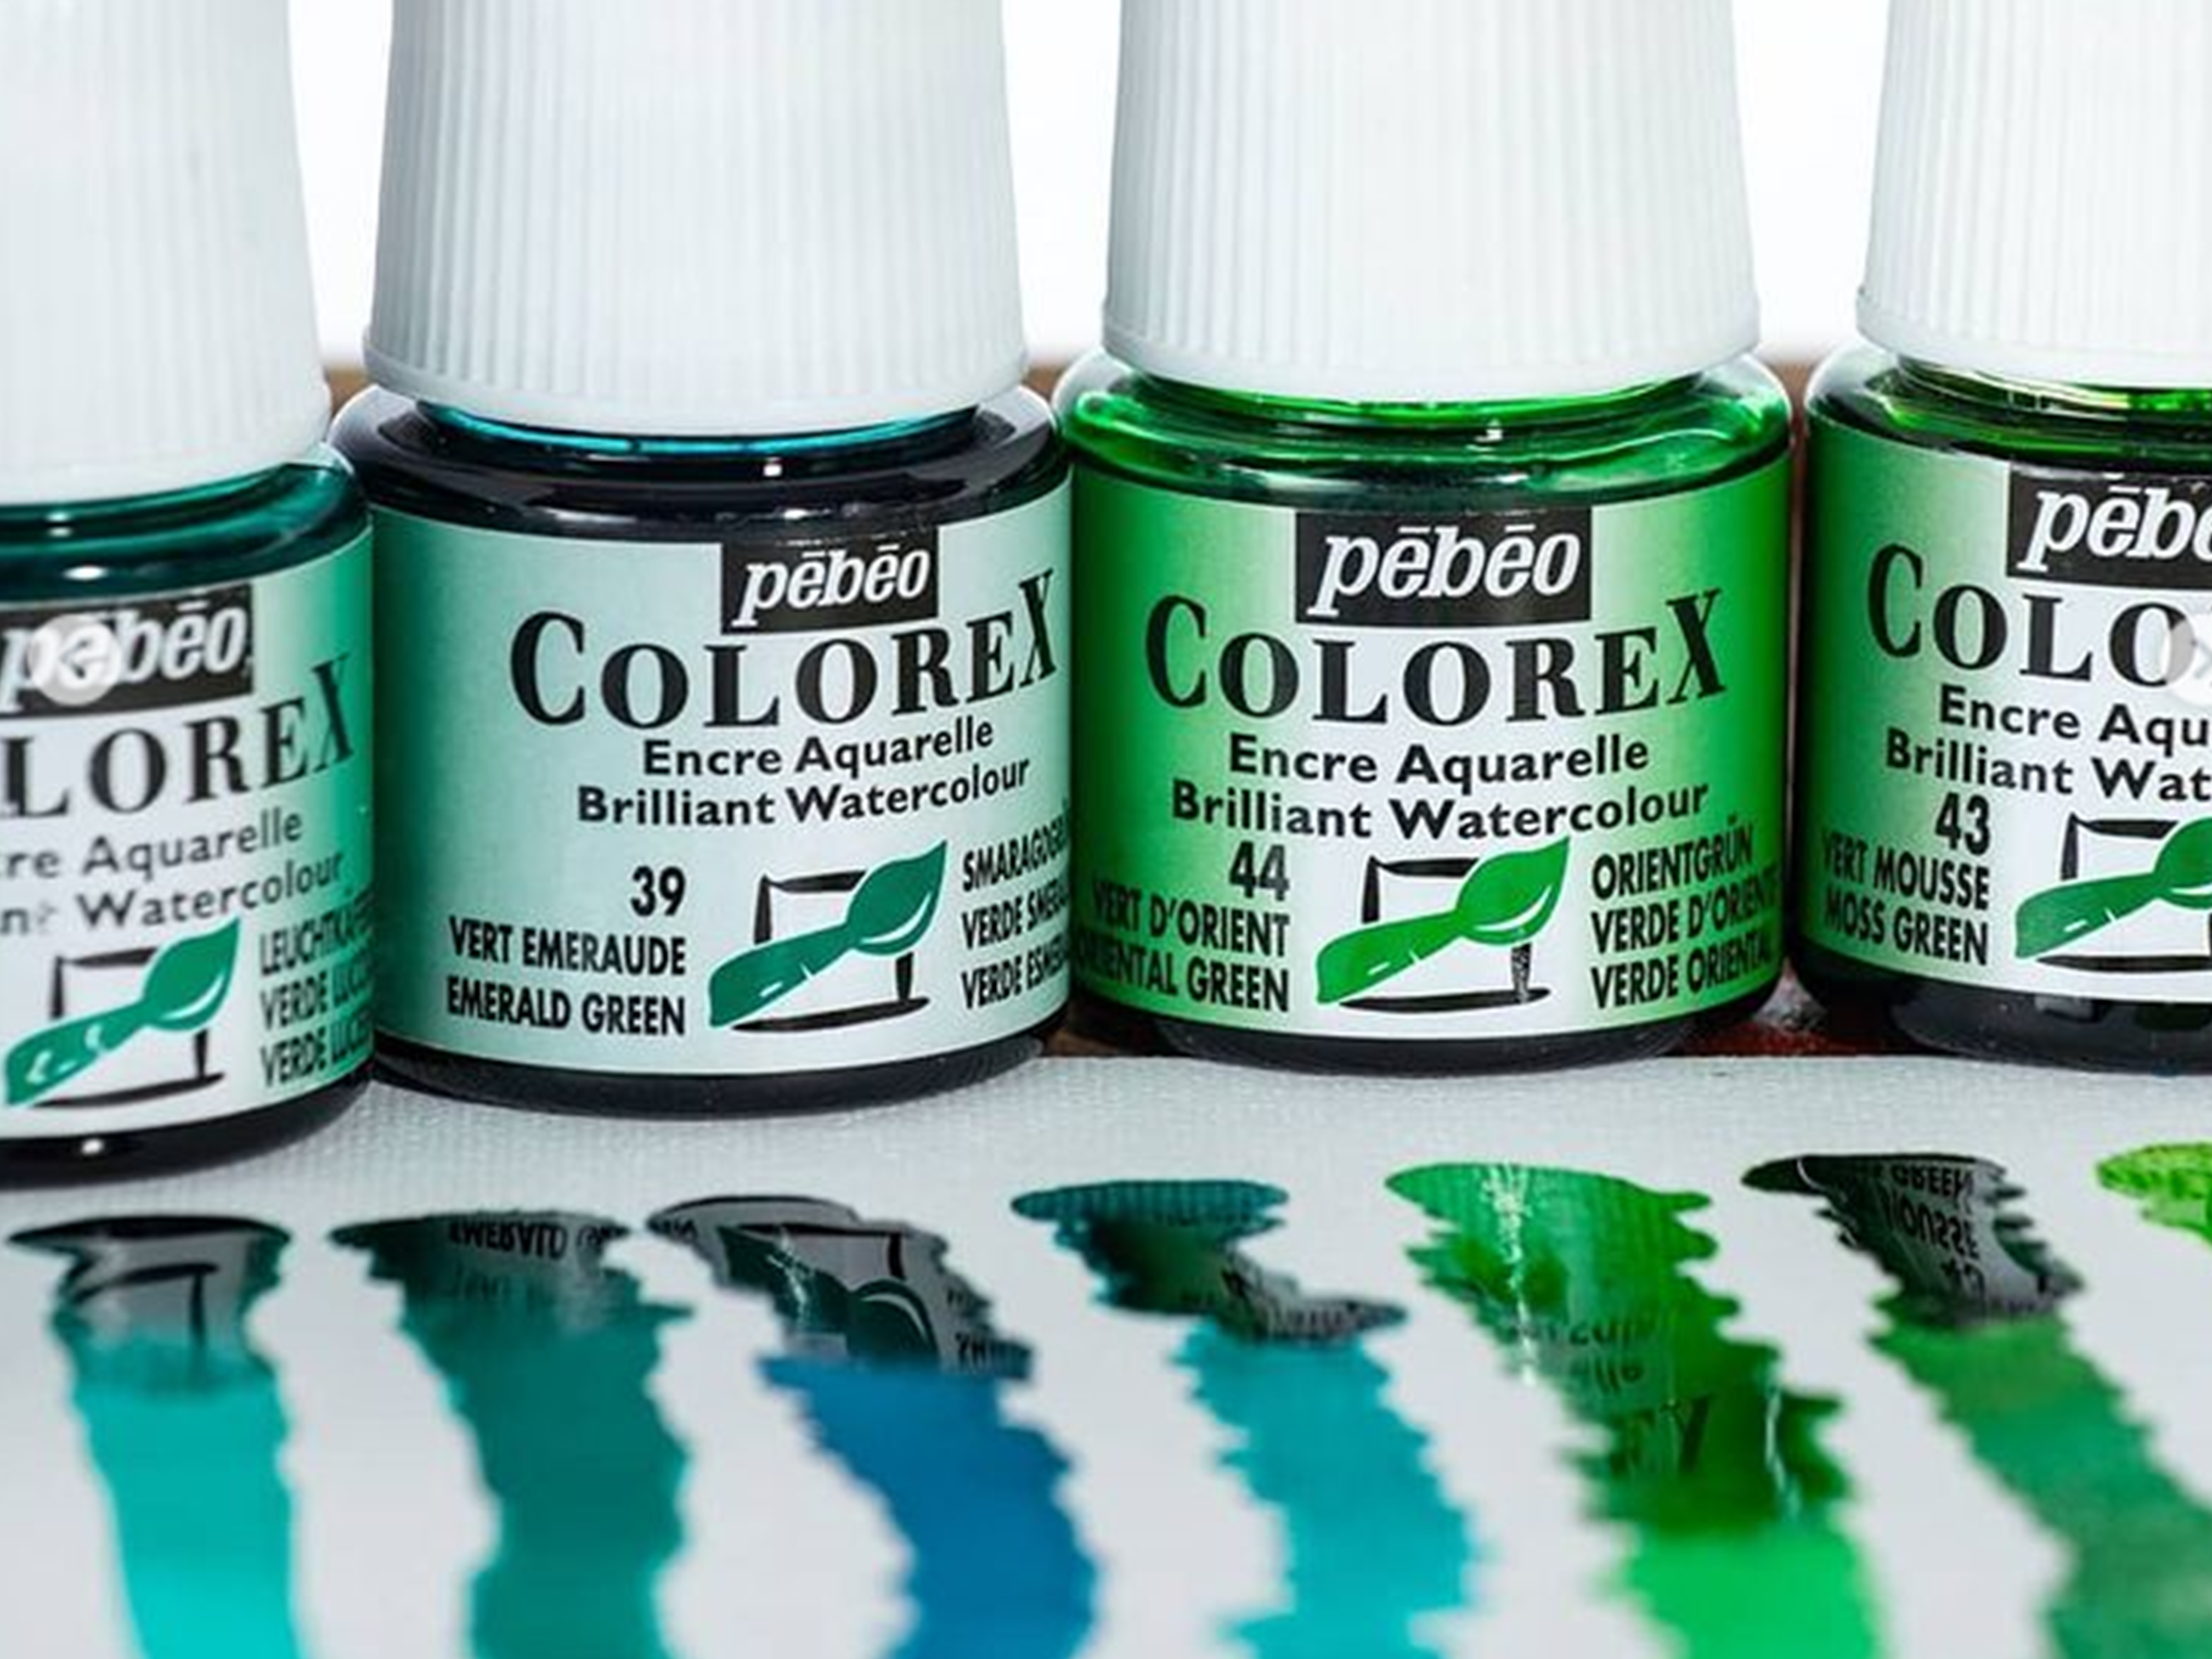 L'encre aquarelle Colorex de Pébéo - La grande maison des arts créatifs